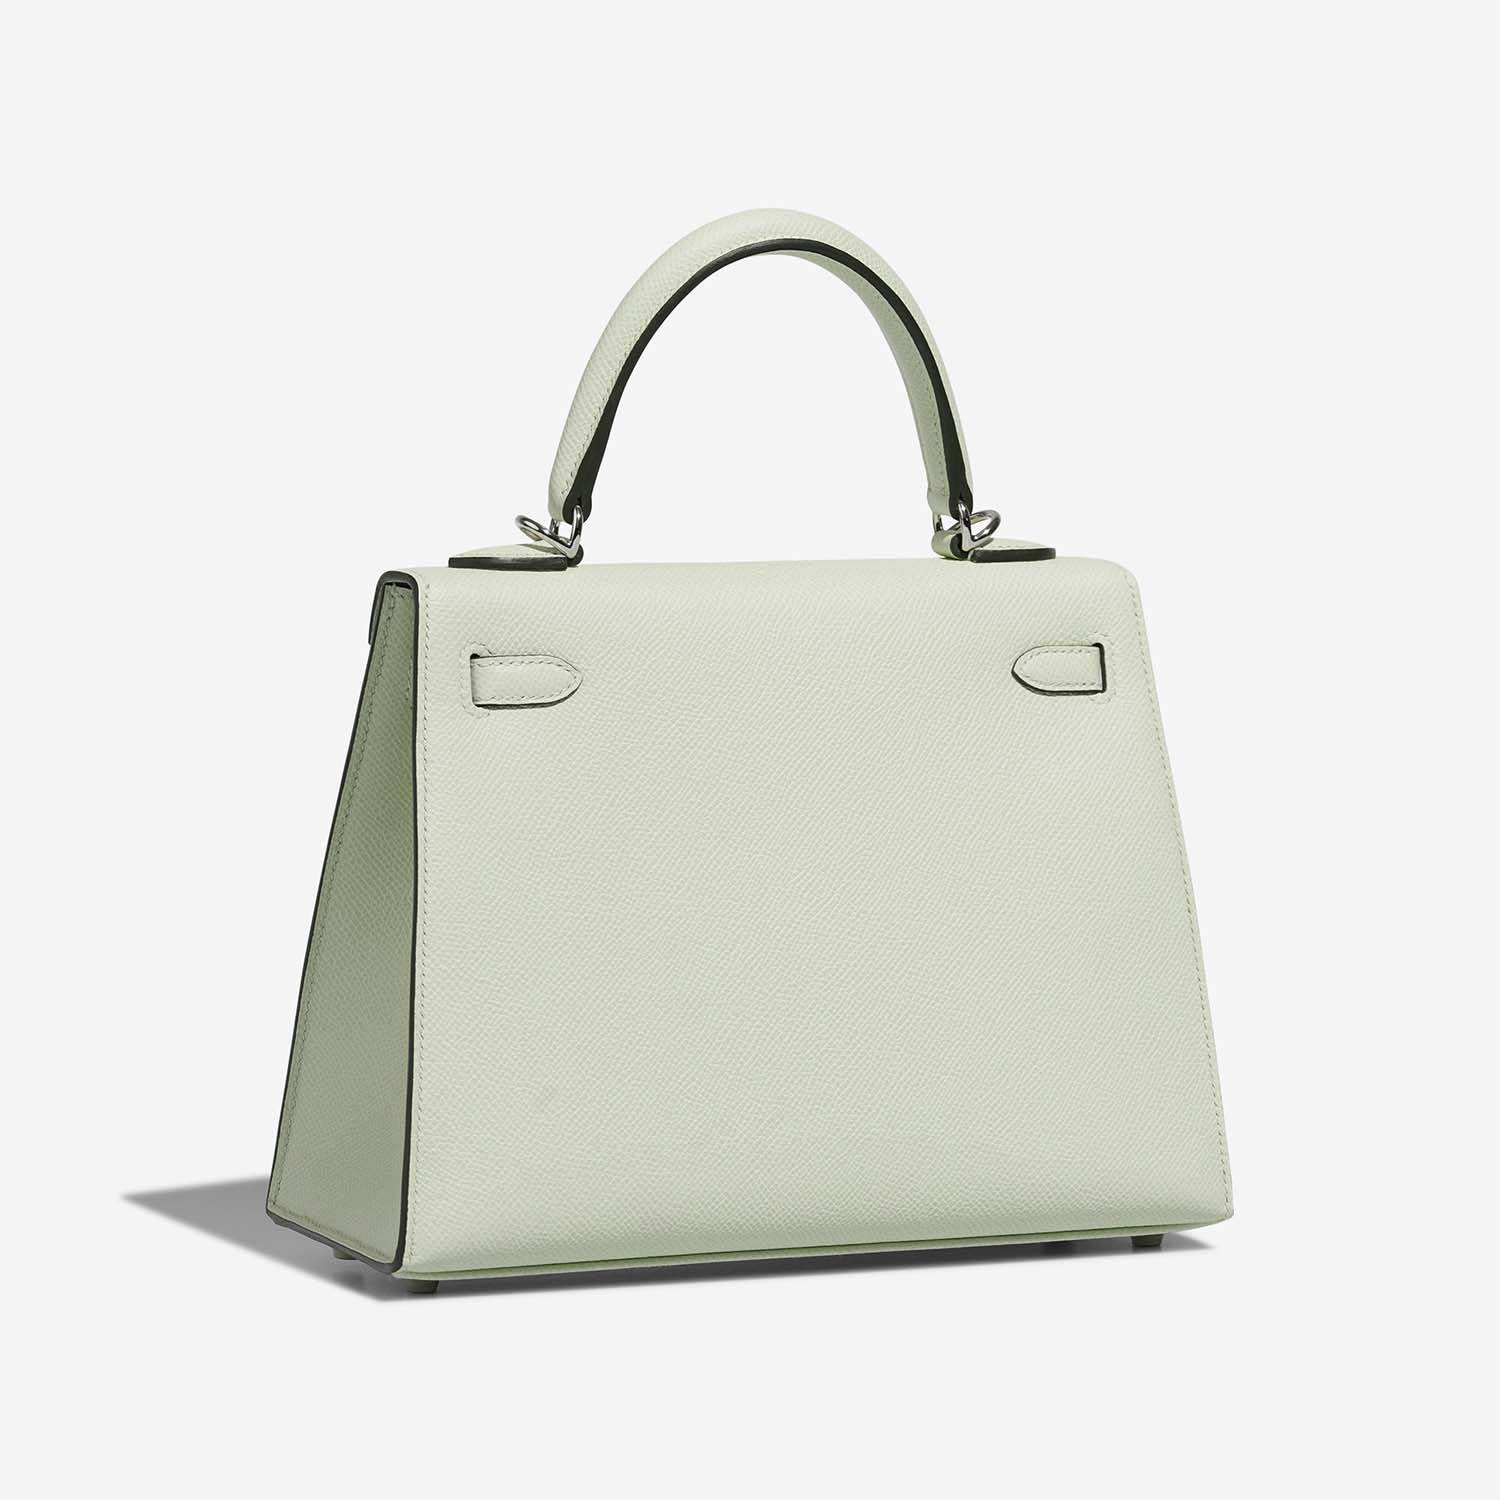 Hermès Kelly 25 VertFizz Side Back | Verkaufen Sie Ihre Designer-Tasche auf Saclab.com